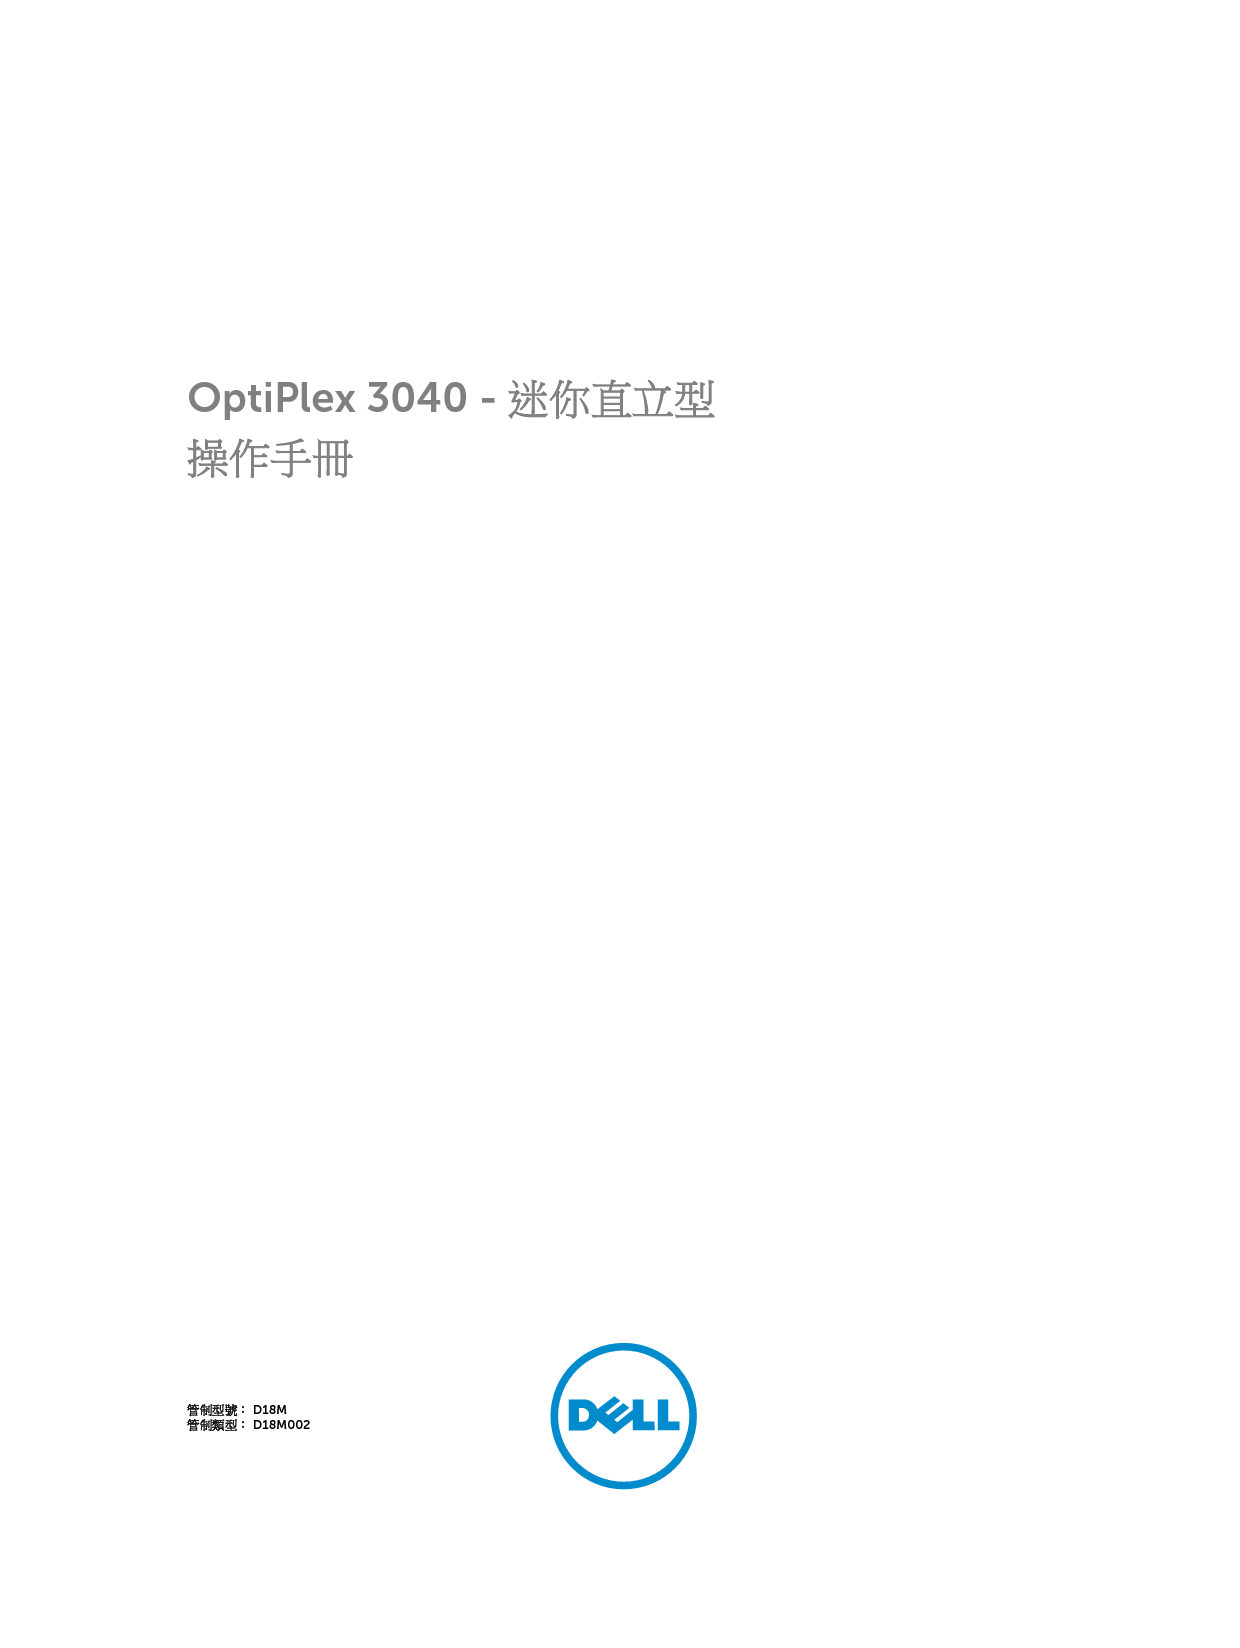 戴尔 Dell Optiplex 3040M 小型塔式 繁体 用户手册 封面